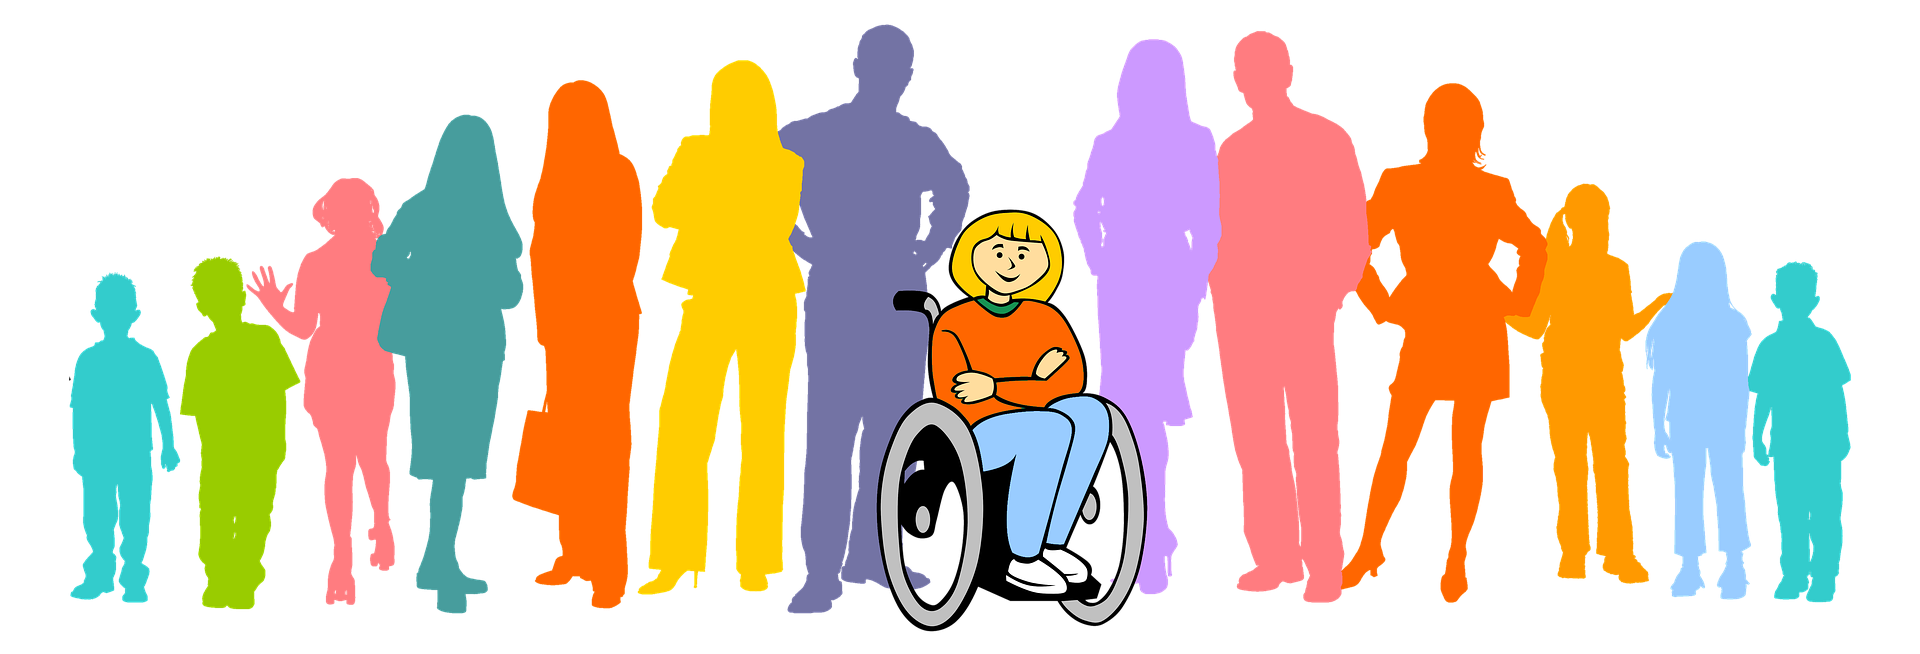 Дискриминация прав детей. Люди с ограниченными возможностями картинки. Социализация людей с инвалидностью. Люди с ОВЗ. Общество инвалидов.